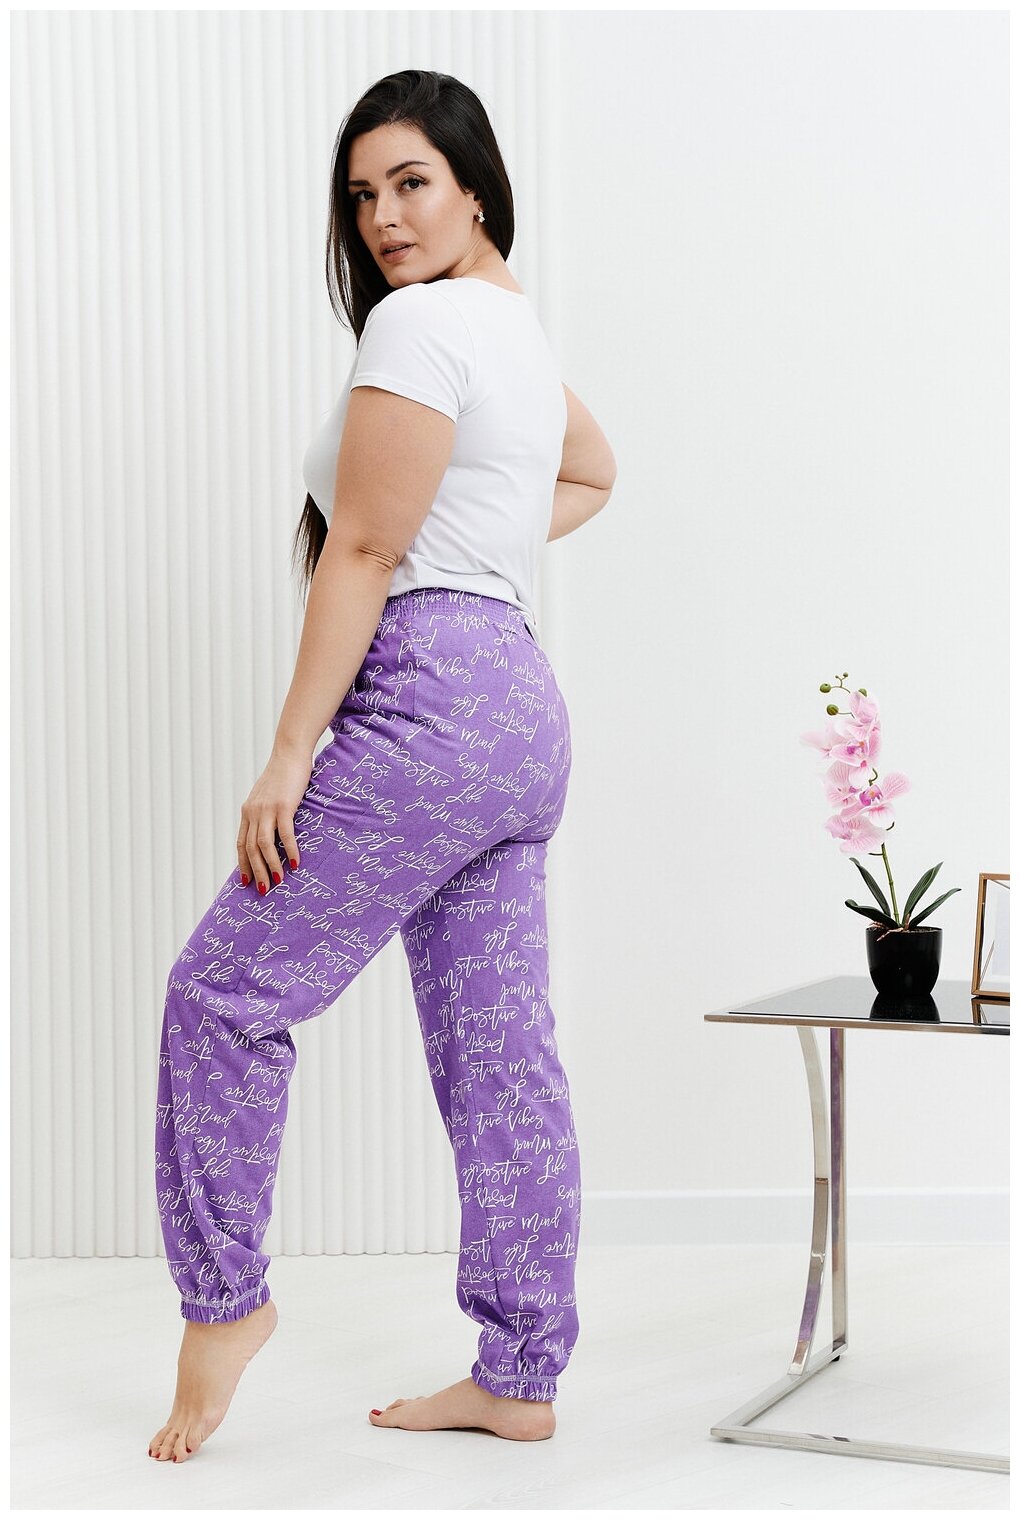 Брюки Натали, без рукава, пояс на резинке, карманы, размер 54, фиолетовый - фотография № 13